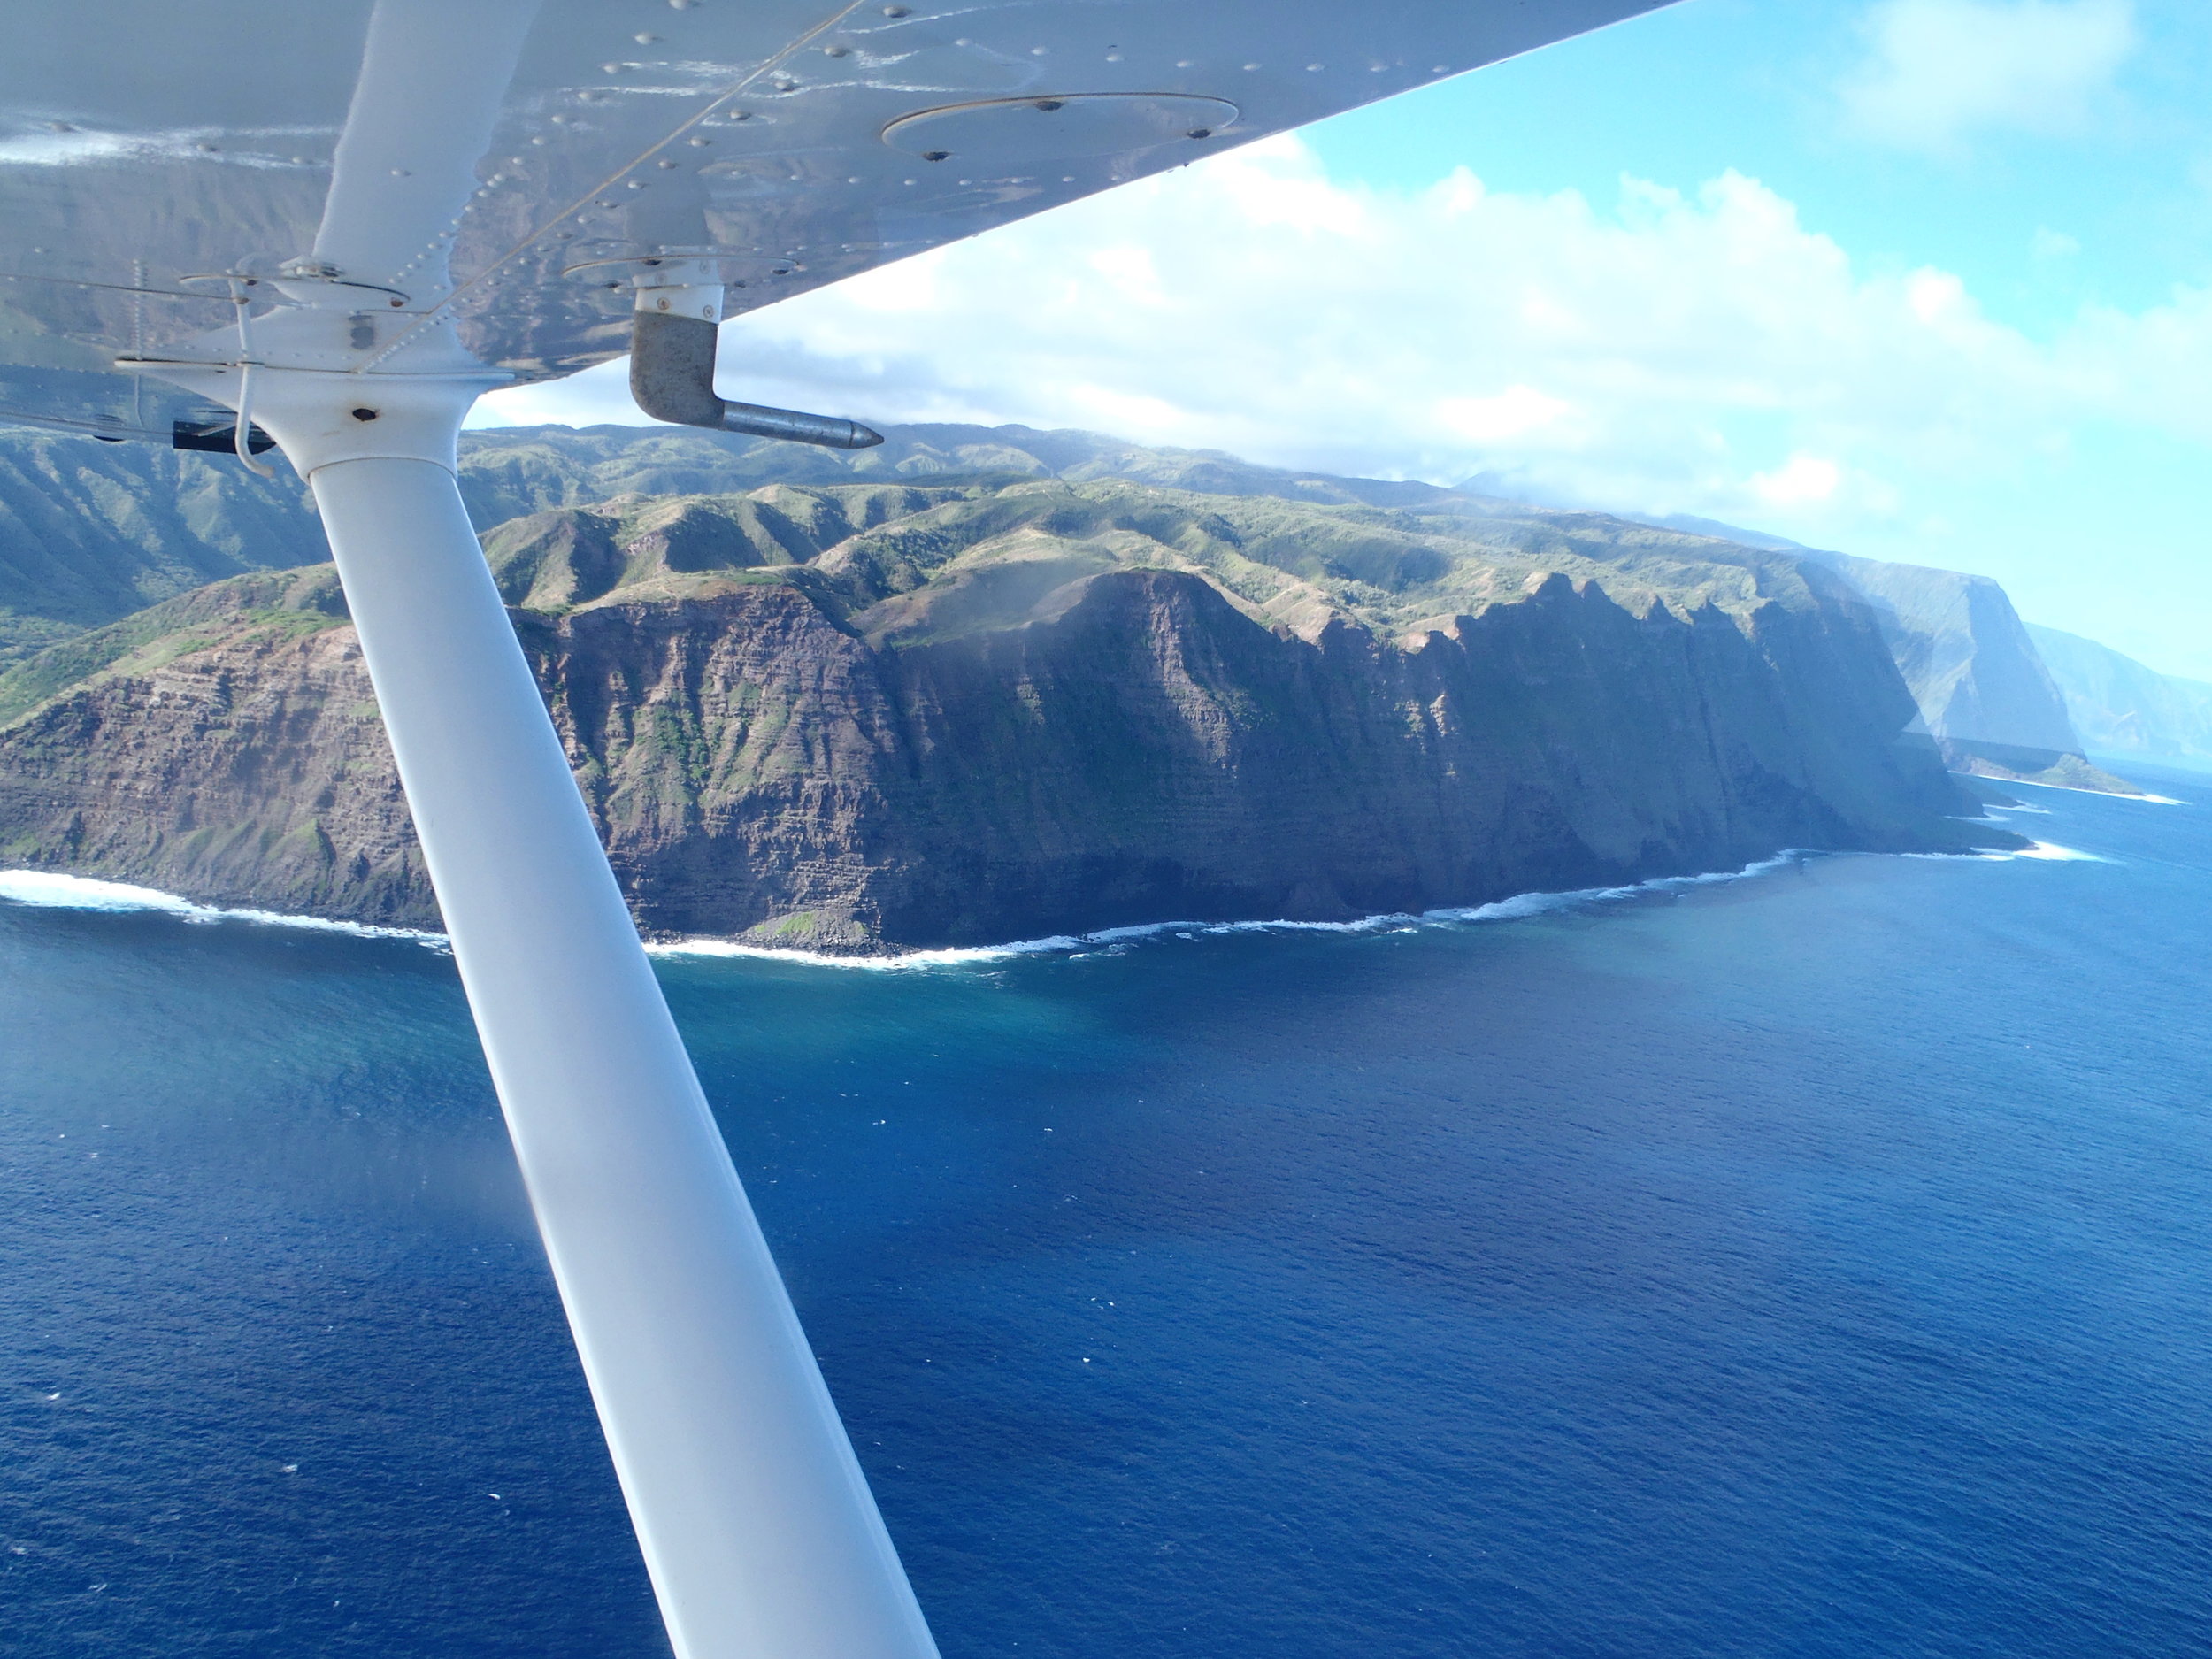 Hawaiian Island Mokola’i, tallest sea cliffs in the world